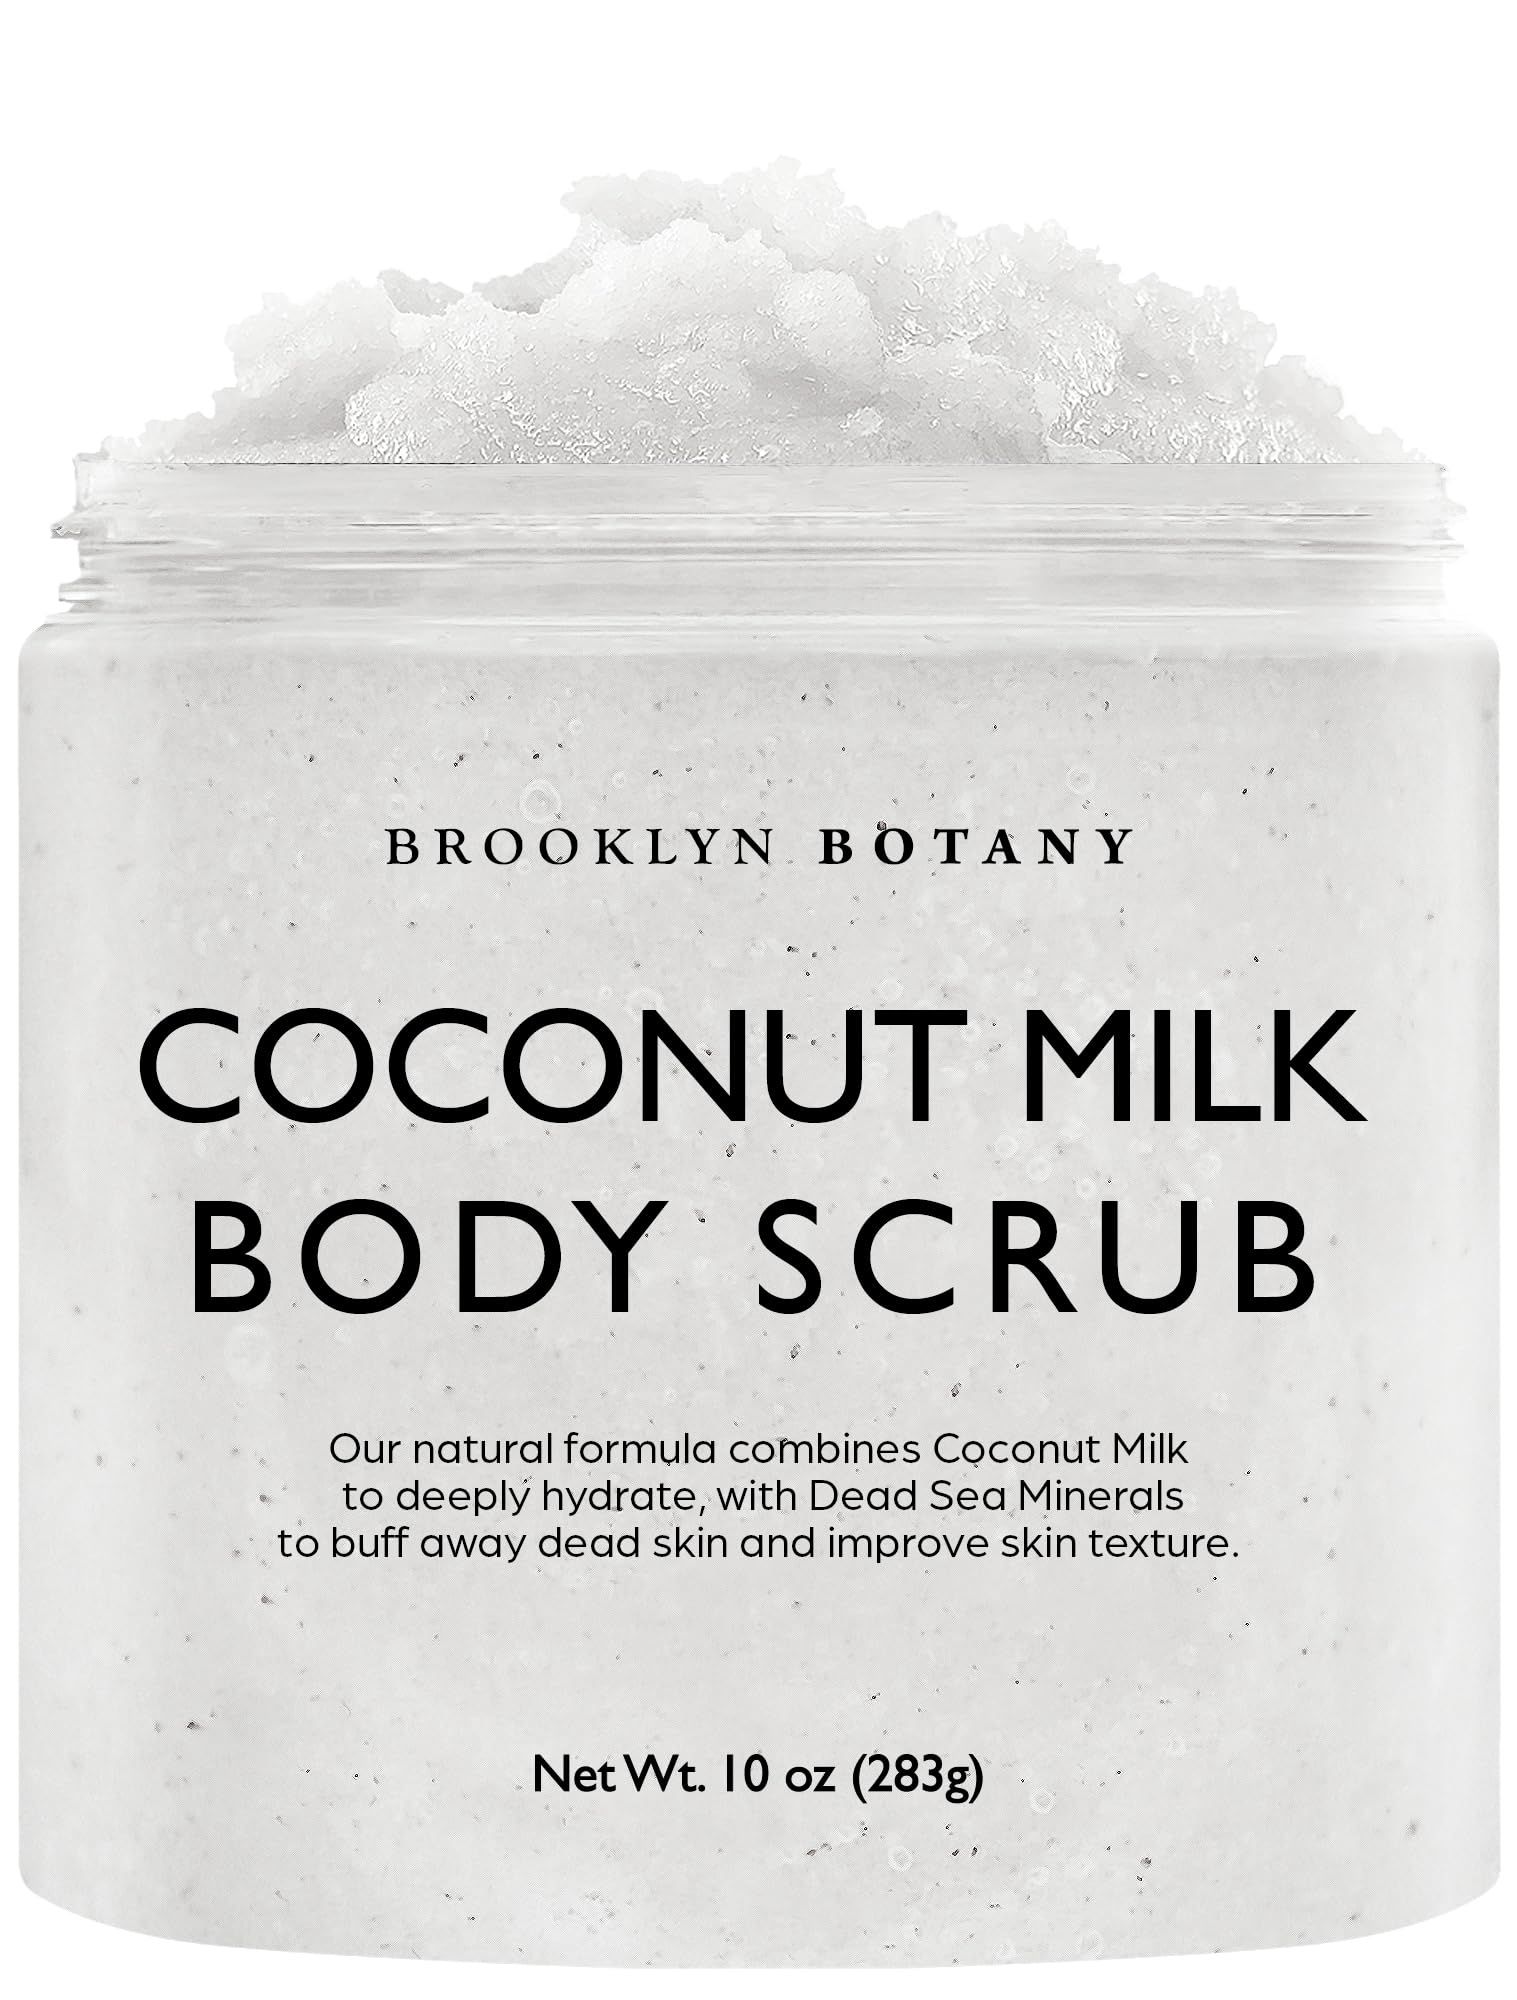 Brooklyn Botany Dead Sea Salt and Coconut Milk Body Scrub - Moisturizing and Exfoliating Body, Fa... | Amazon (US)